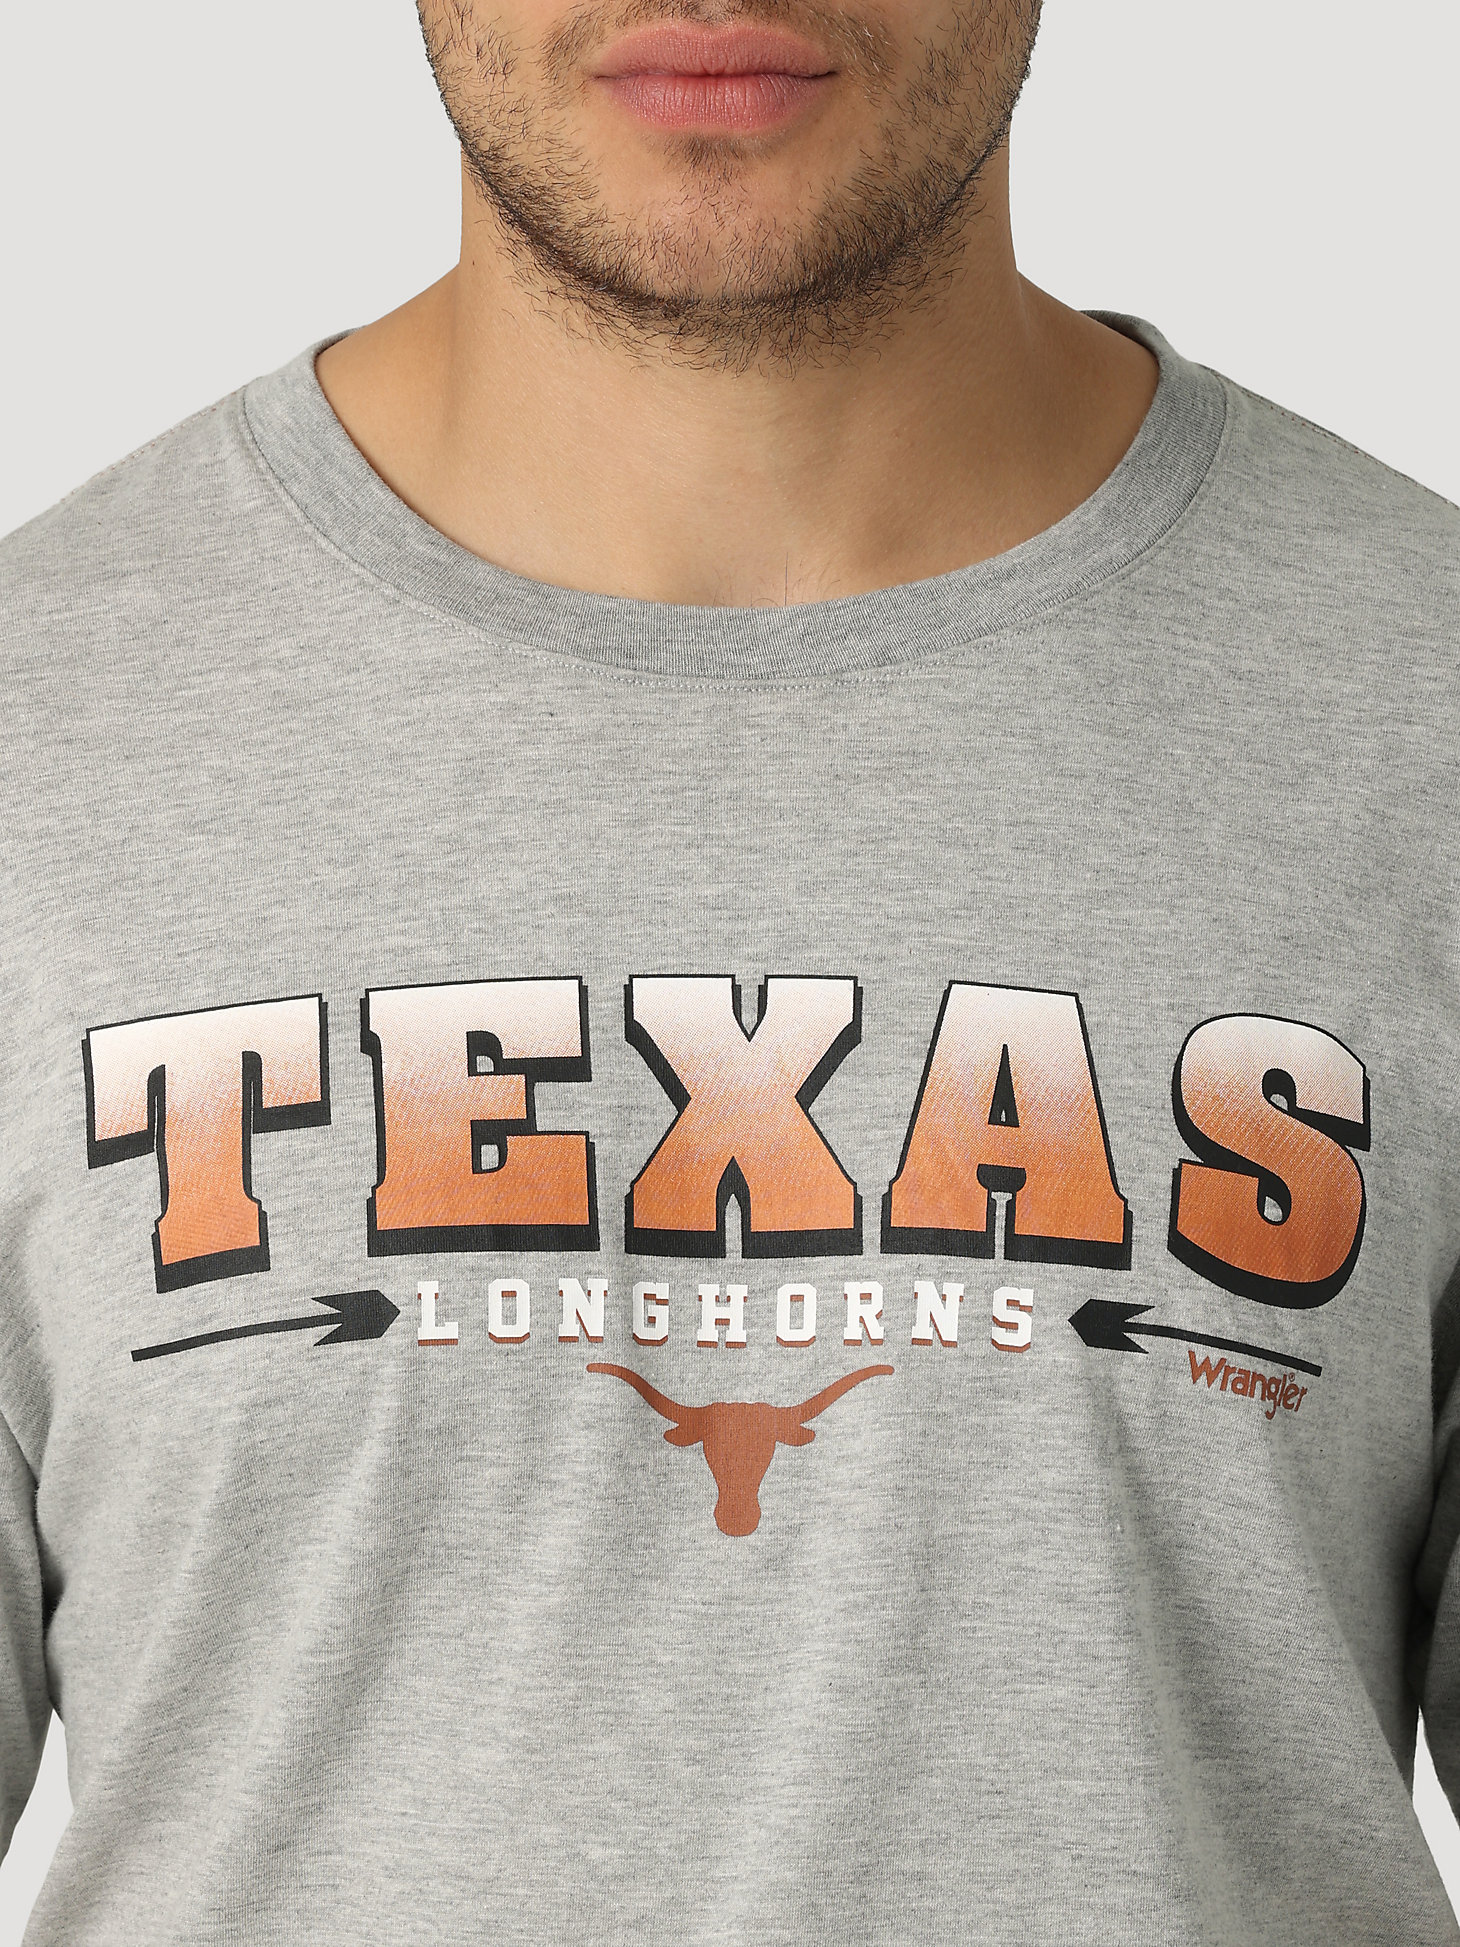 Wrangler Collegiate Sunset Printed Short Sleeve T-Shirt in University of Texas alternative view 1